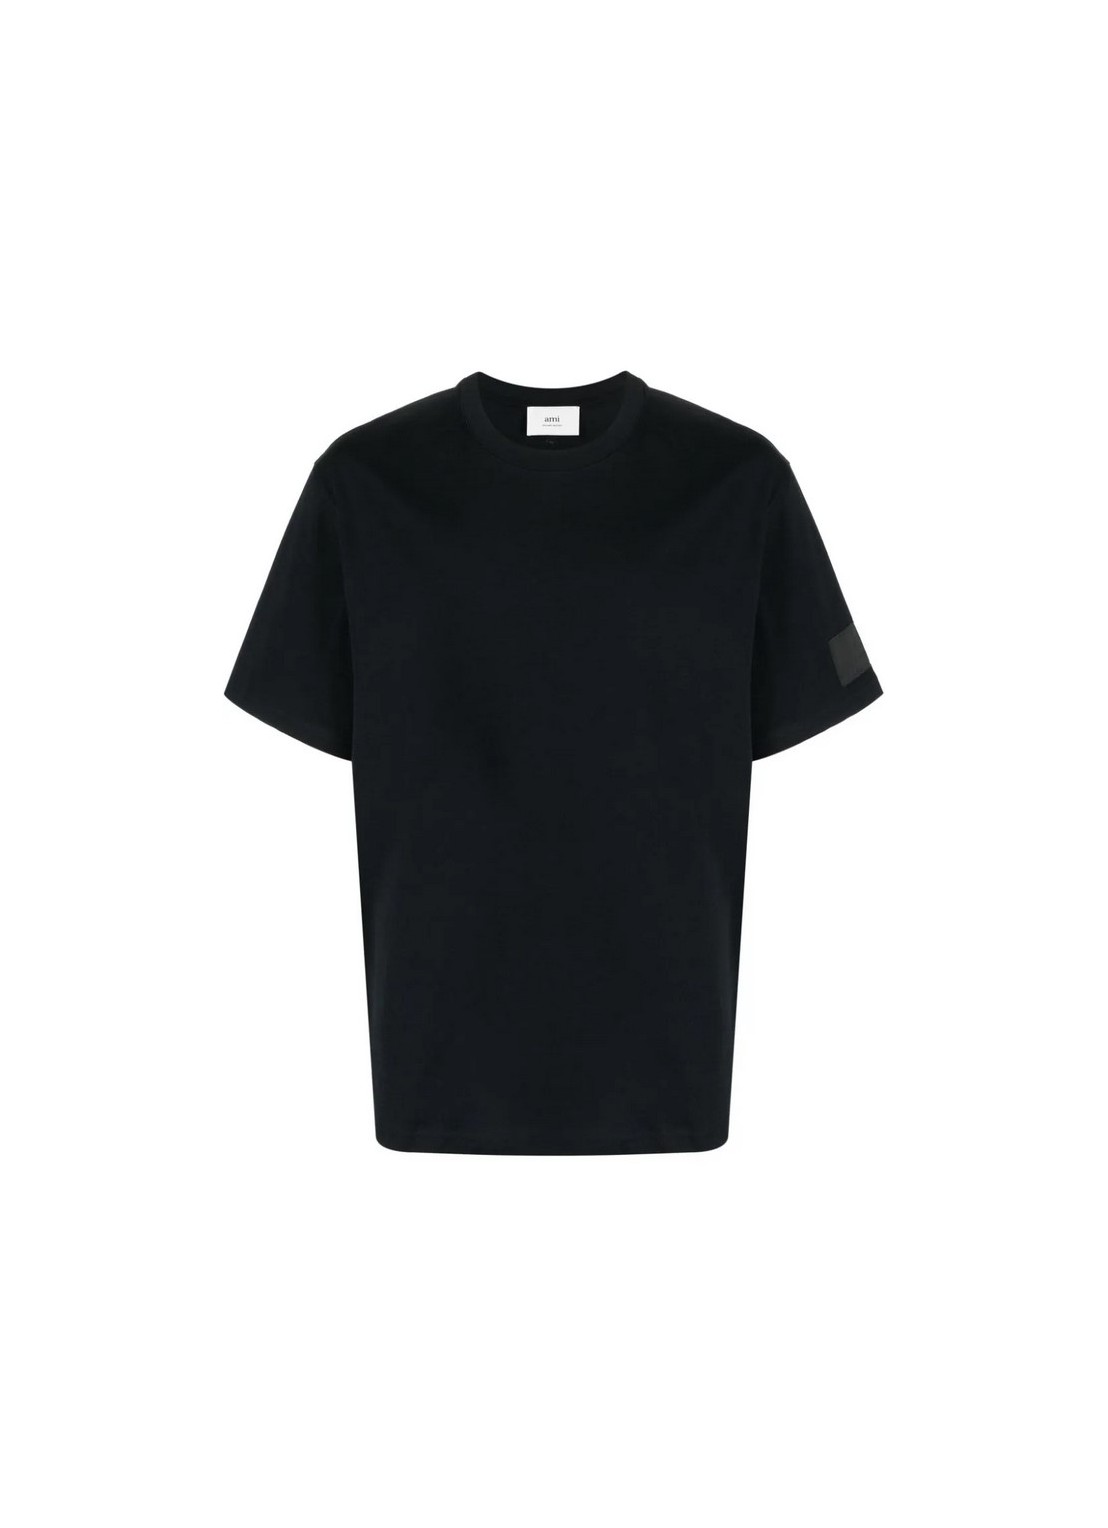 Camiseta ami t-shirt man fade out tshirt uts017726 001 talla S
 